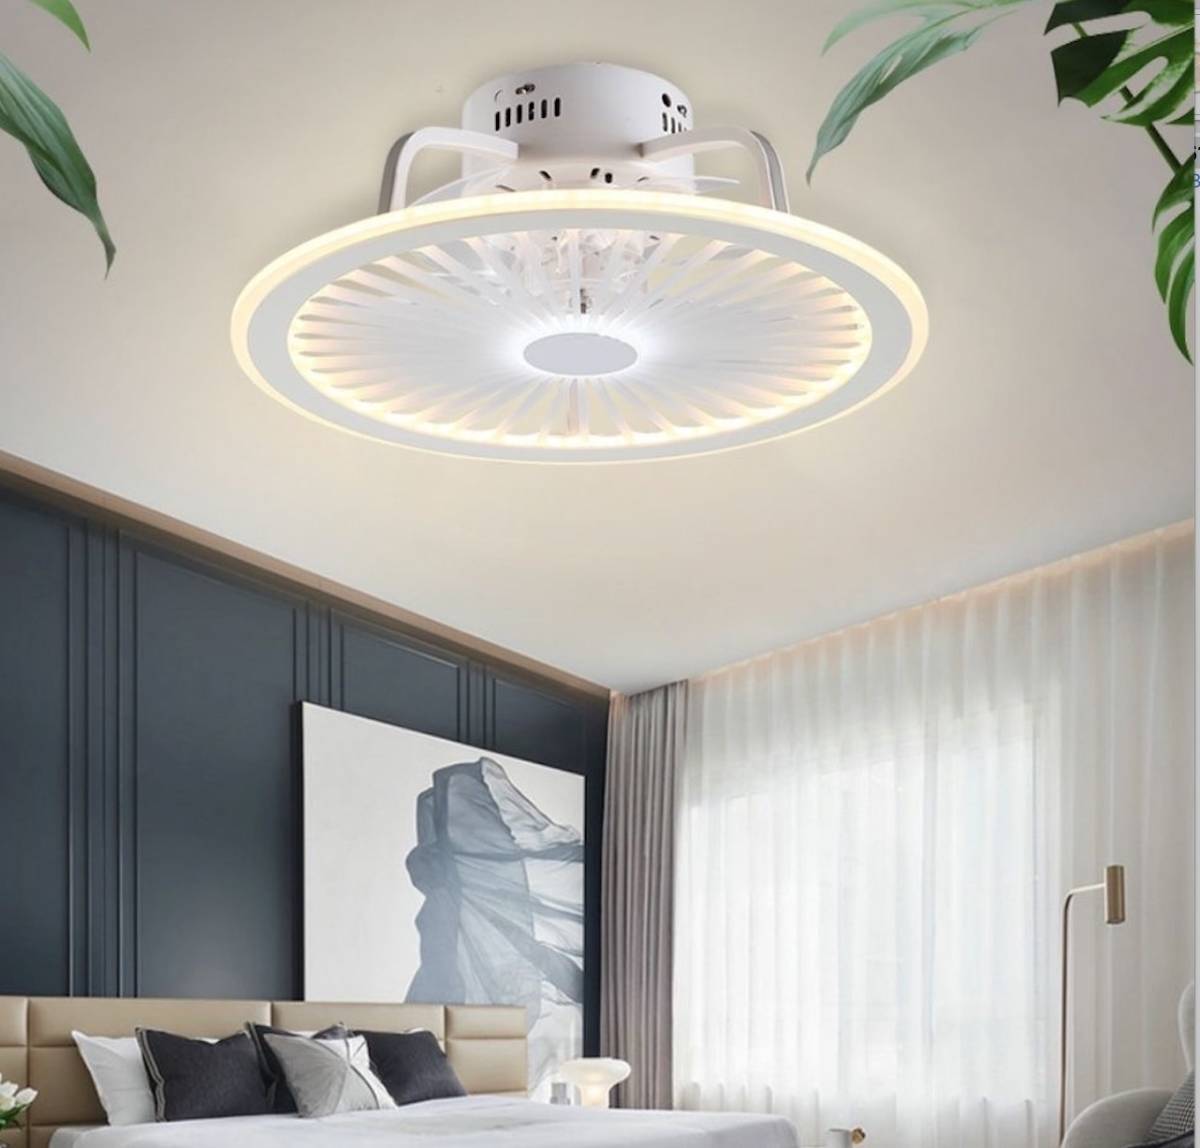 適当な価格 シーリングファンライト 天井照明 リモコン式ファン LED